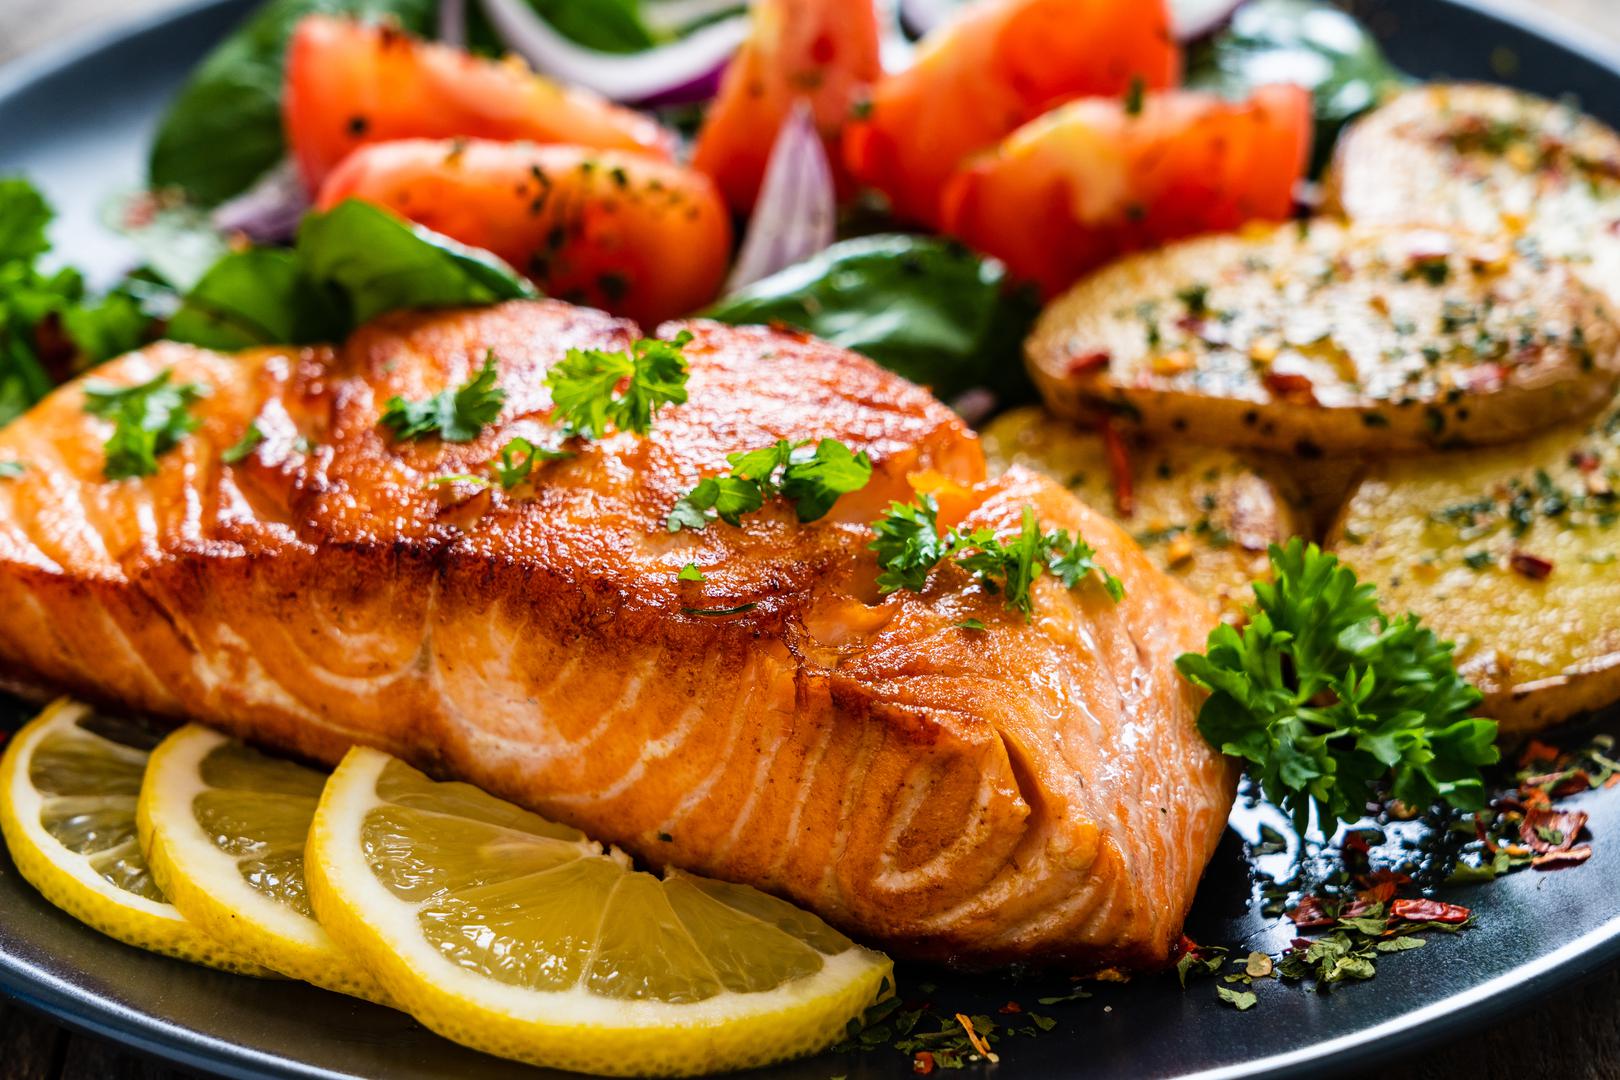 Masna riba: Masna riba poput divljeg lososa, sardina, inćuna, haringe i skuše kvalitetni su izvori proteina i esencijalnih omega-3 masnih kiselina DHA i EPA, rekao je Hyman. 'Jesti losos dva puta tjedno dovoljno je da smanjite rizik od srčanog udara, aritmije, moždanog udara, visokog krvnog tlaka i povišenih triglicerida', objasnio je. Omega-3 masne kiseline u masnoj ribi također štite od upala, temeljnog uzroka gotovo svih kroničnih bolesti i bolesti povezanih sa starenjem.